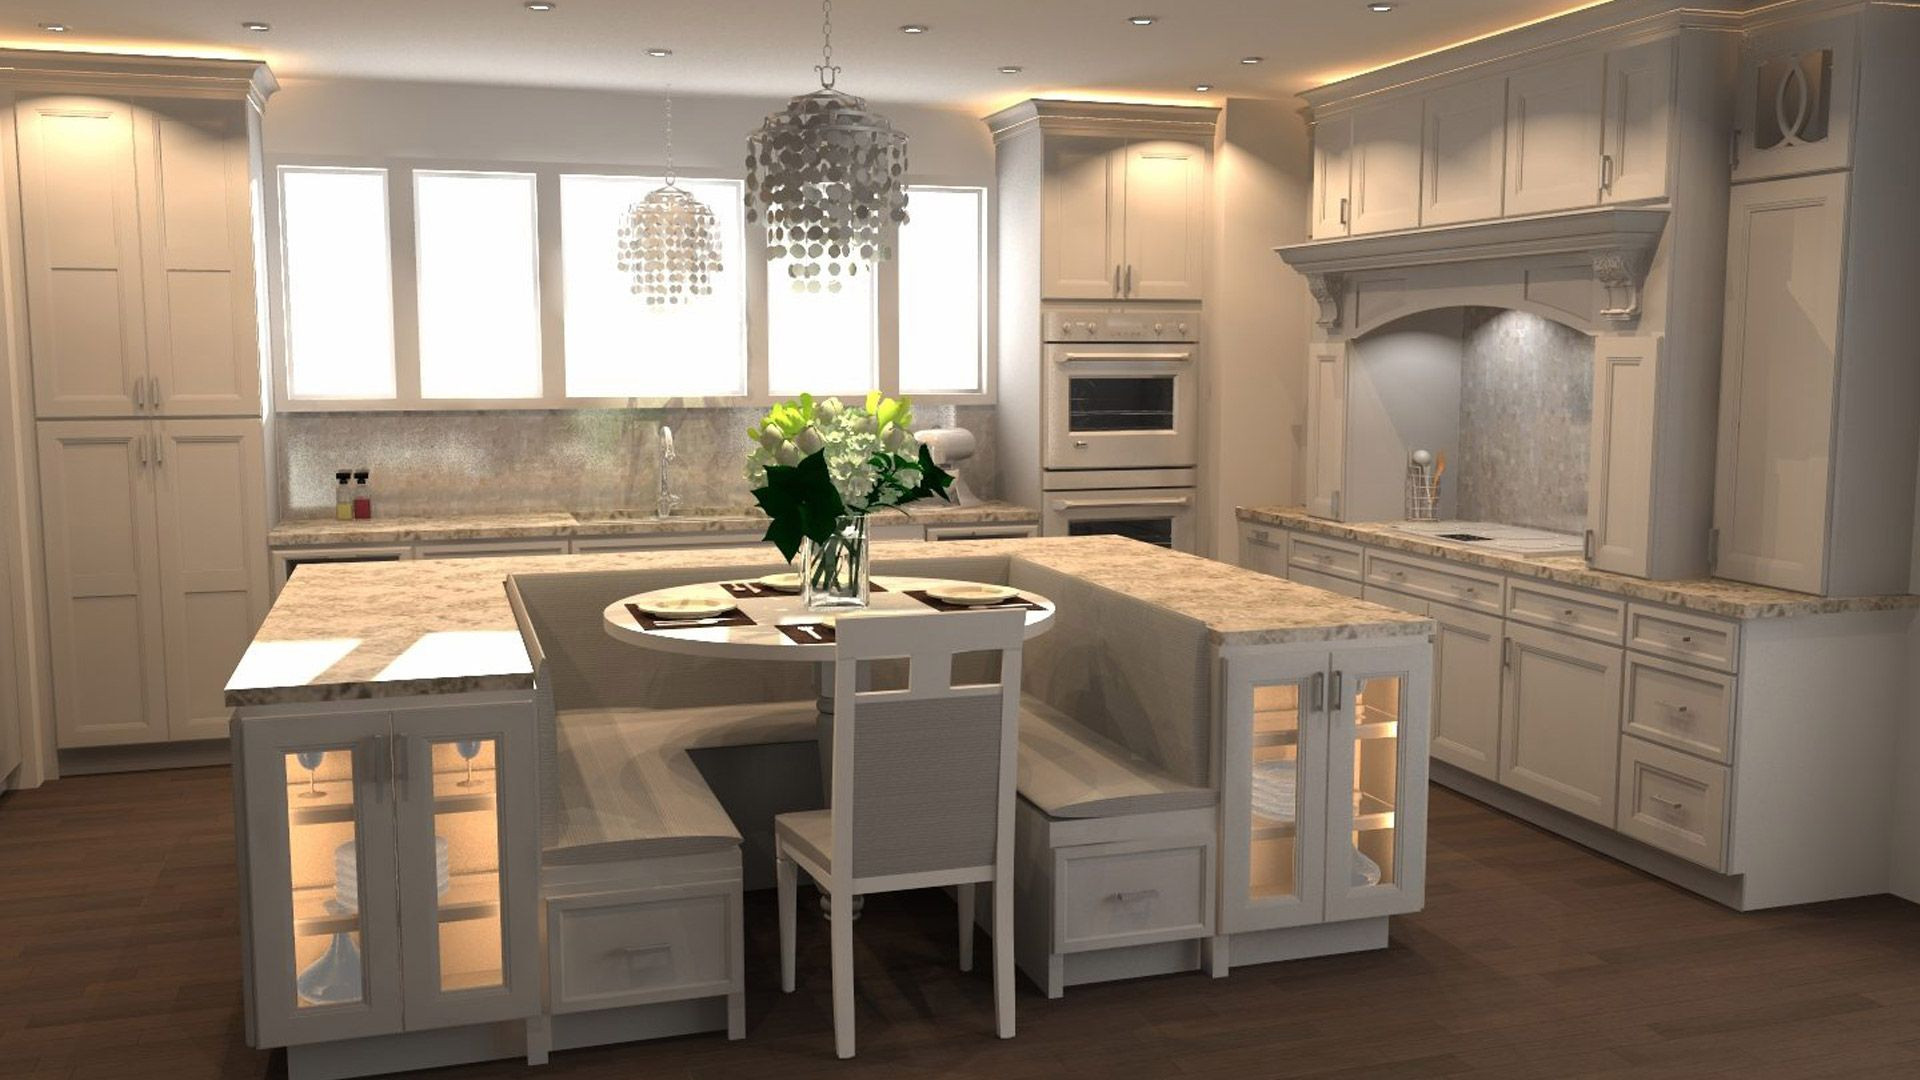 Kitchen Design Ideas 2020
 2020 Design in 2020